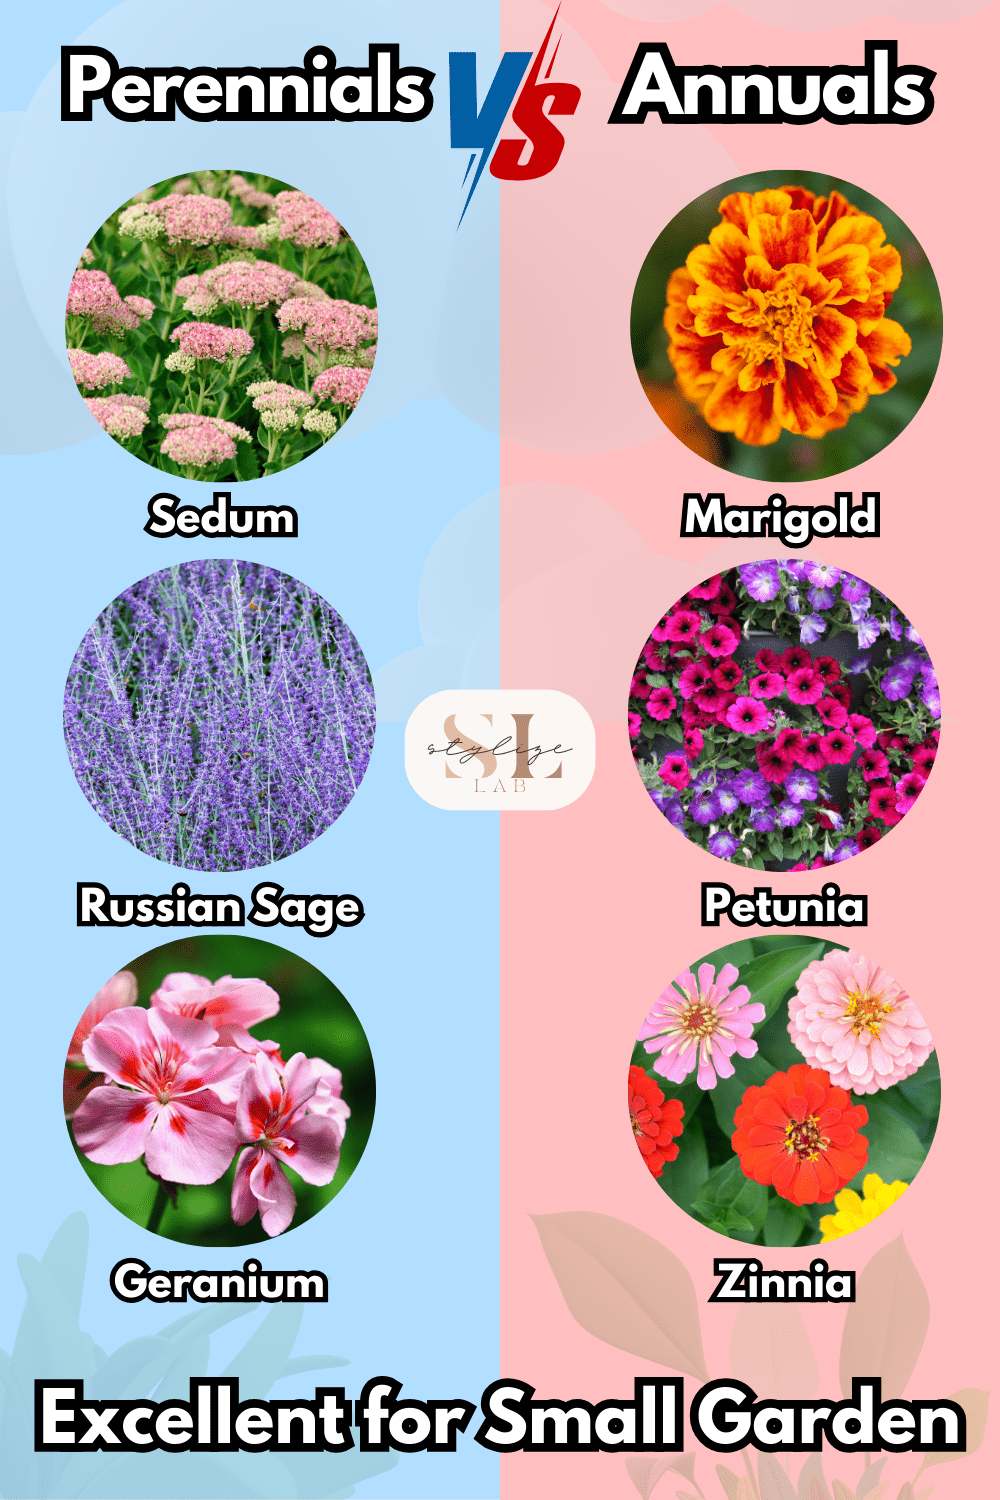 Perennials vs Annuals